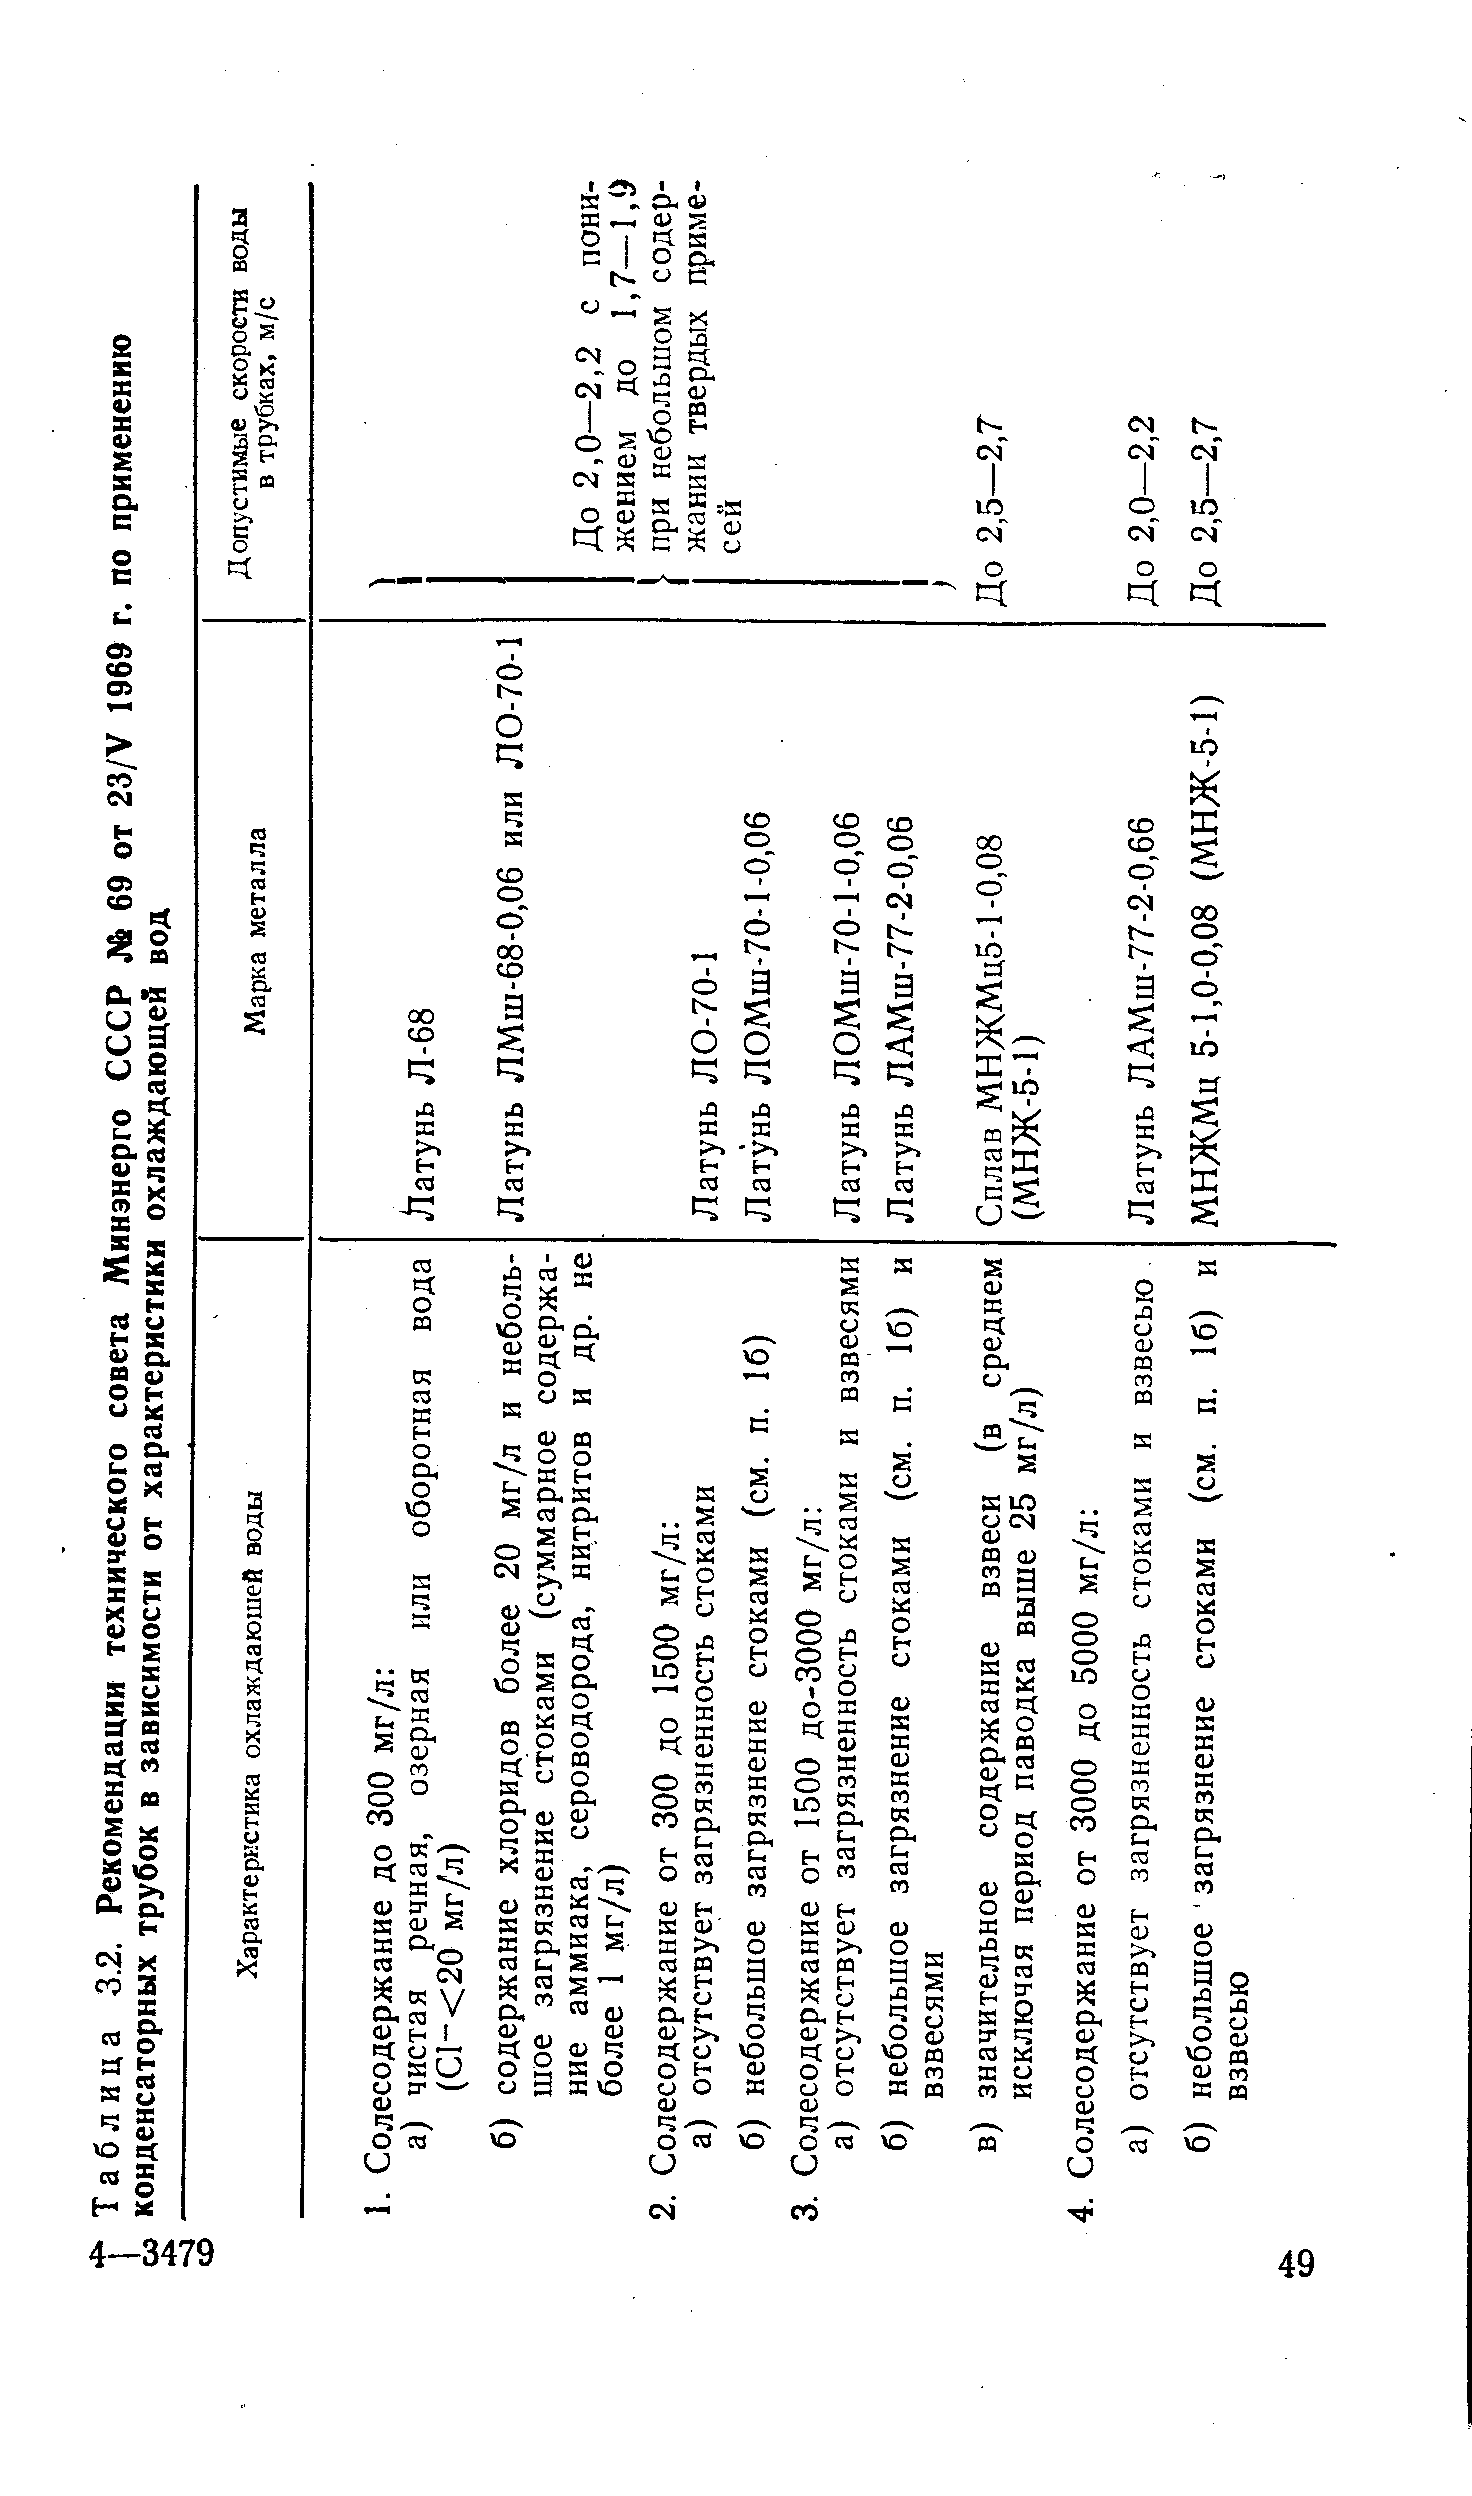 Таблица 3.2. Рекомендации технического совета Минэнерго СССР № 69 от 23/У 1969 г. по применению
